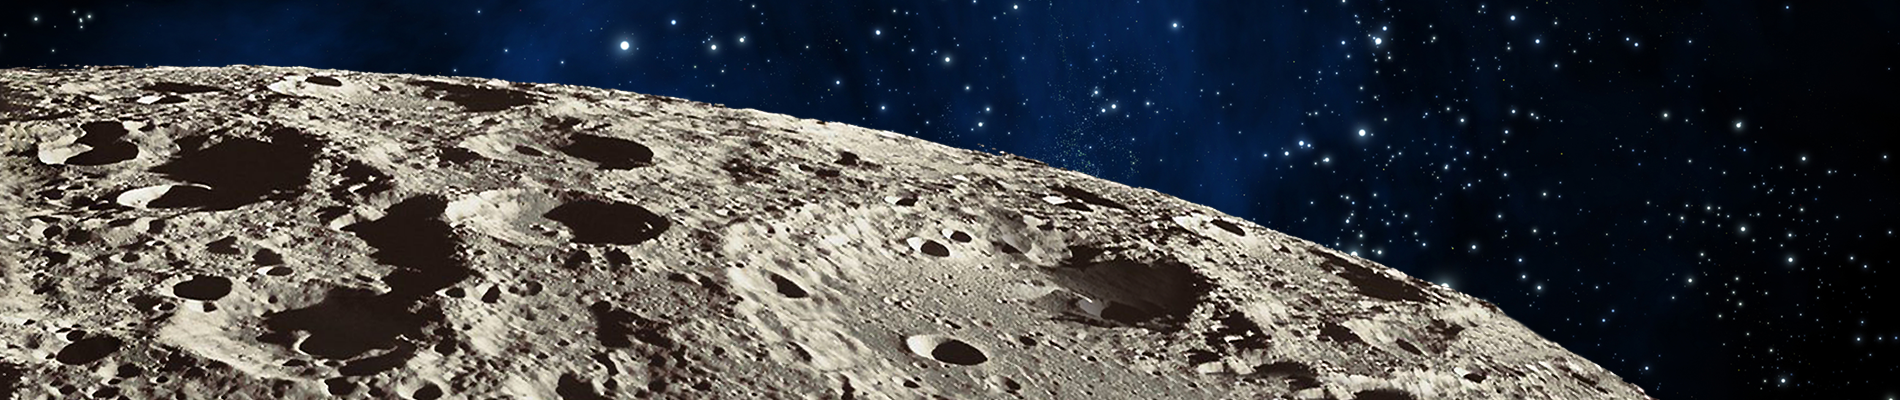 header image for lunar rover website